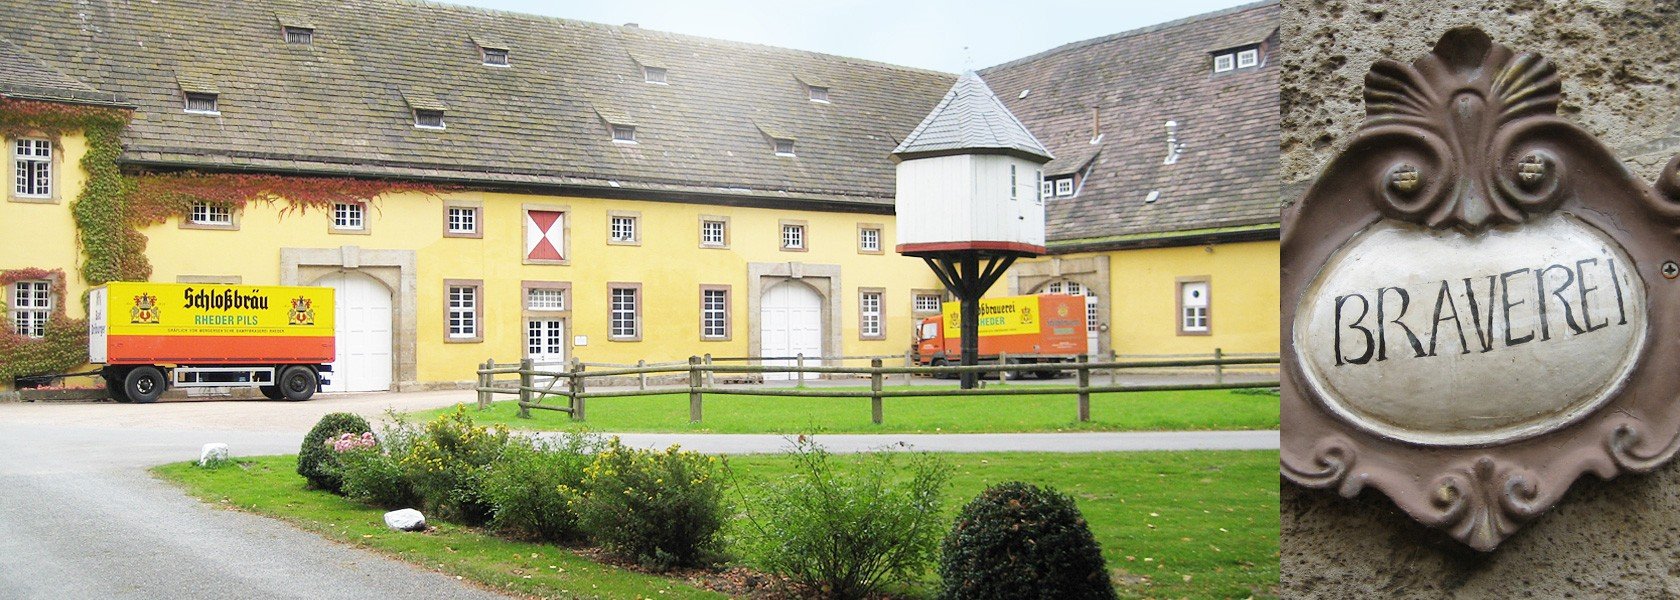 Schloßbrauerei Rheder Brauerei aus Deutschland